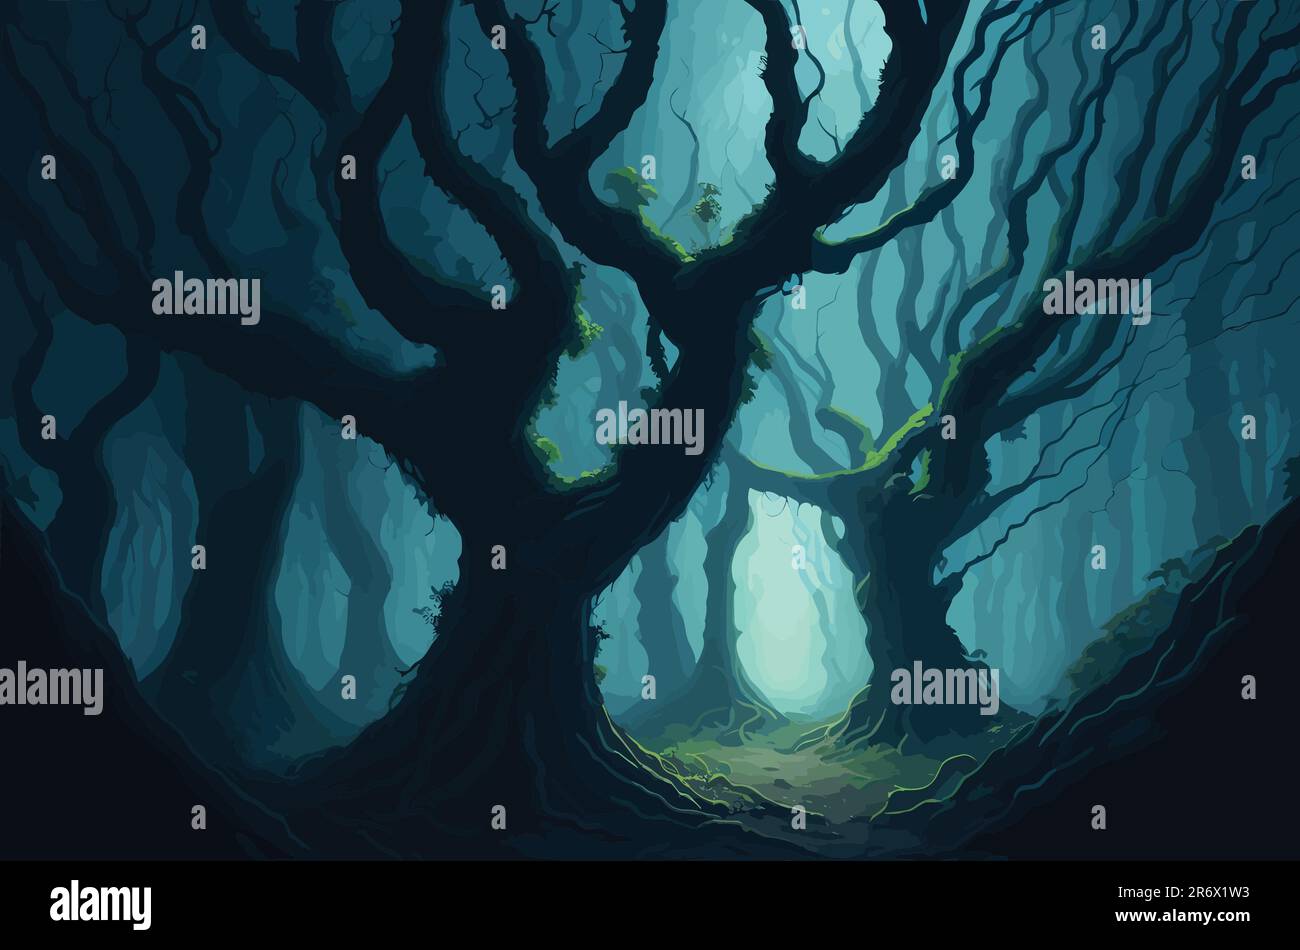 Ein mystischer, nebelbedeckter Wald mit antiken Bäumen, die von Reben, weichen Sonnenstrahlen, die durch die Baumkronen dringen, und ätherischen Kreaturen umgeben sind Stock Vektor